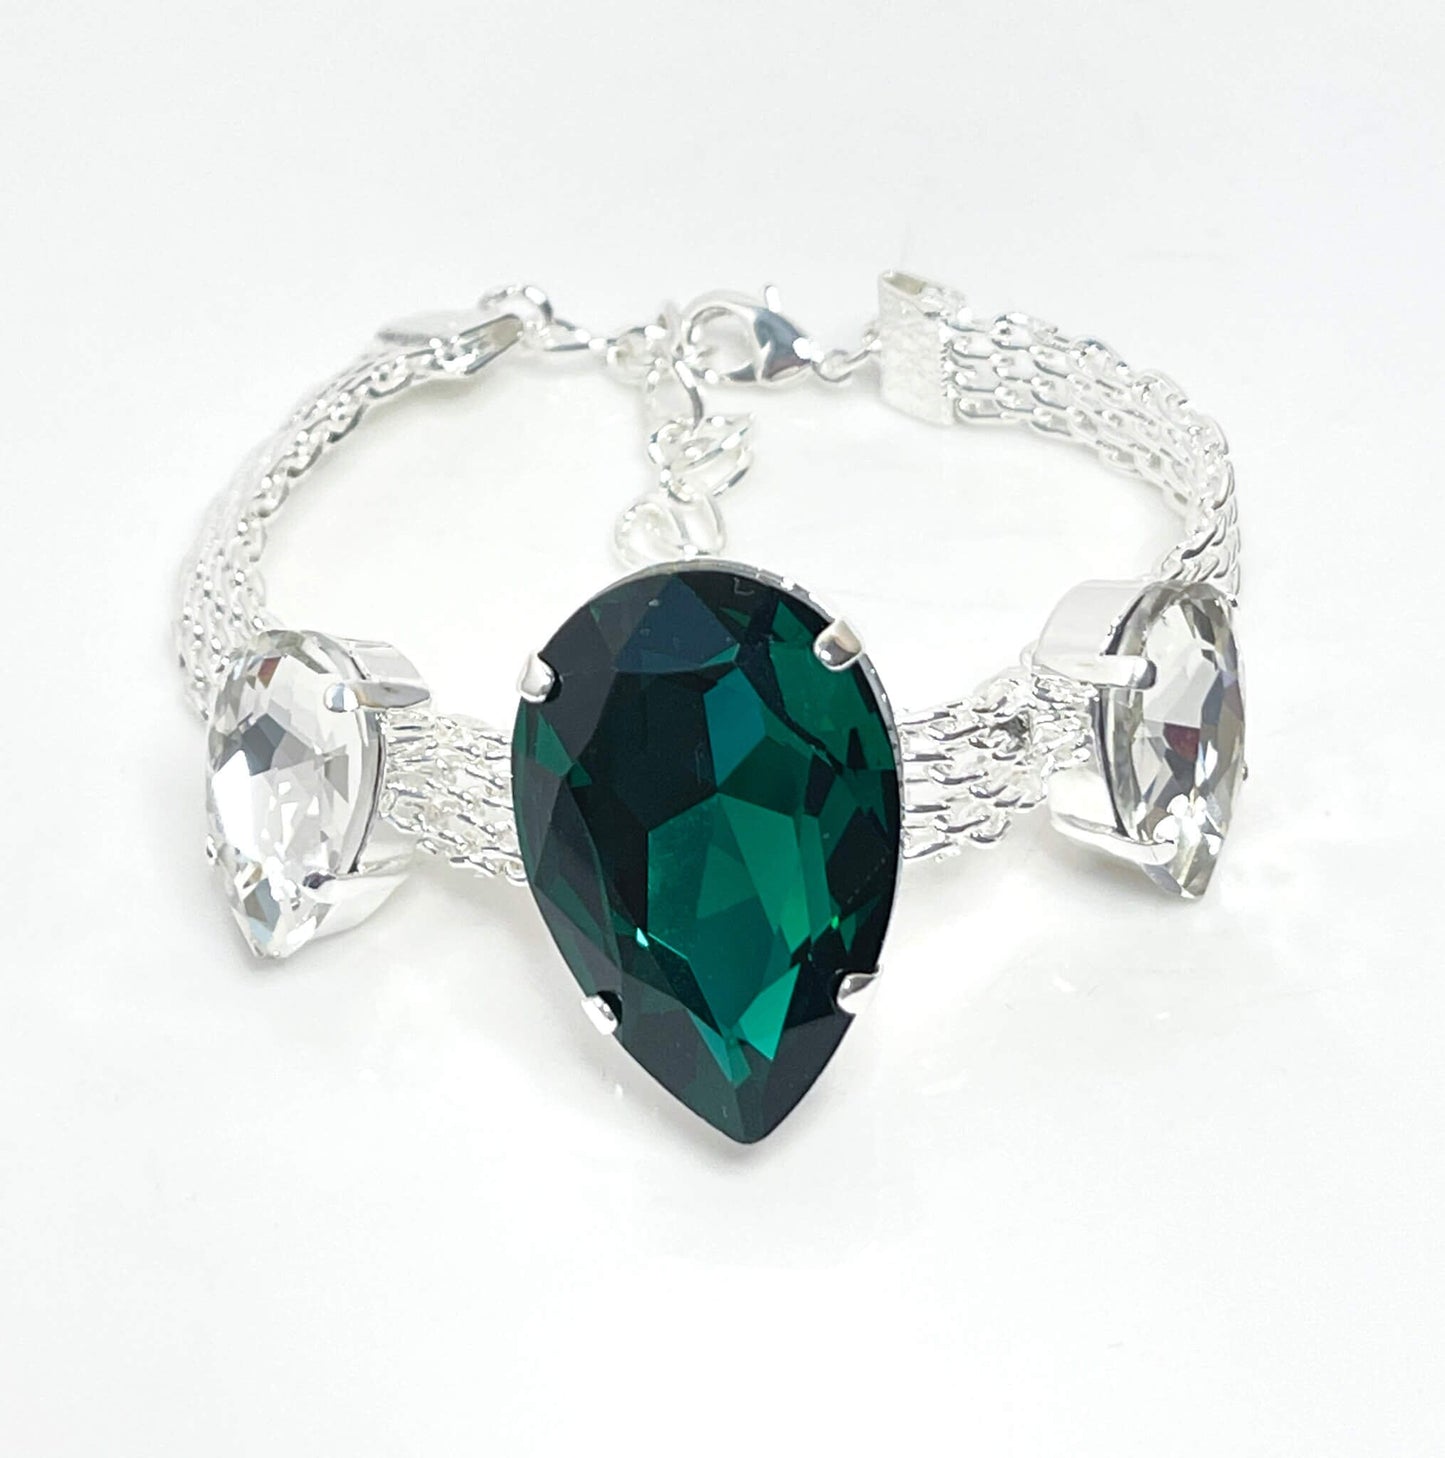 Emerald Crystal Silver Mesh Bracelet, Large Teardrop Cuff, Statement Jewellery, Georgian Style Bracelet, Bracelets for Women